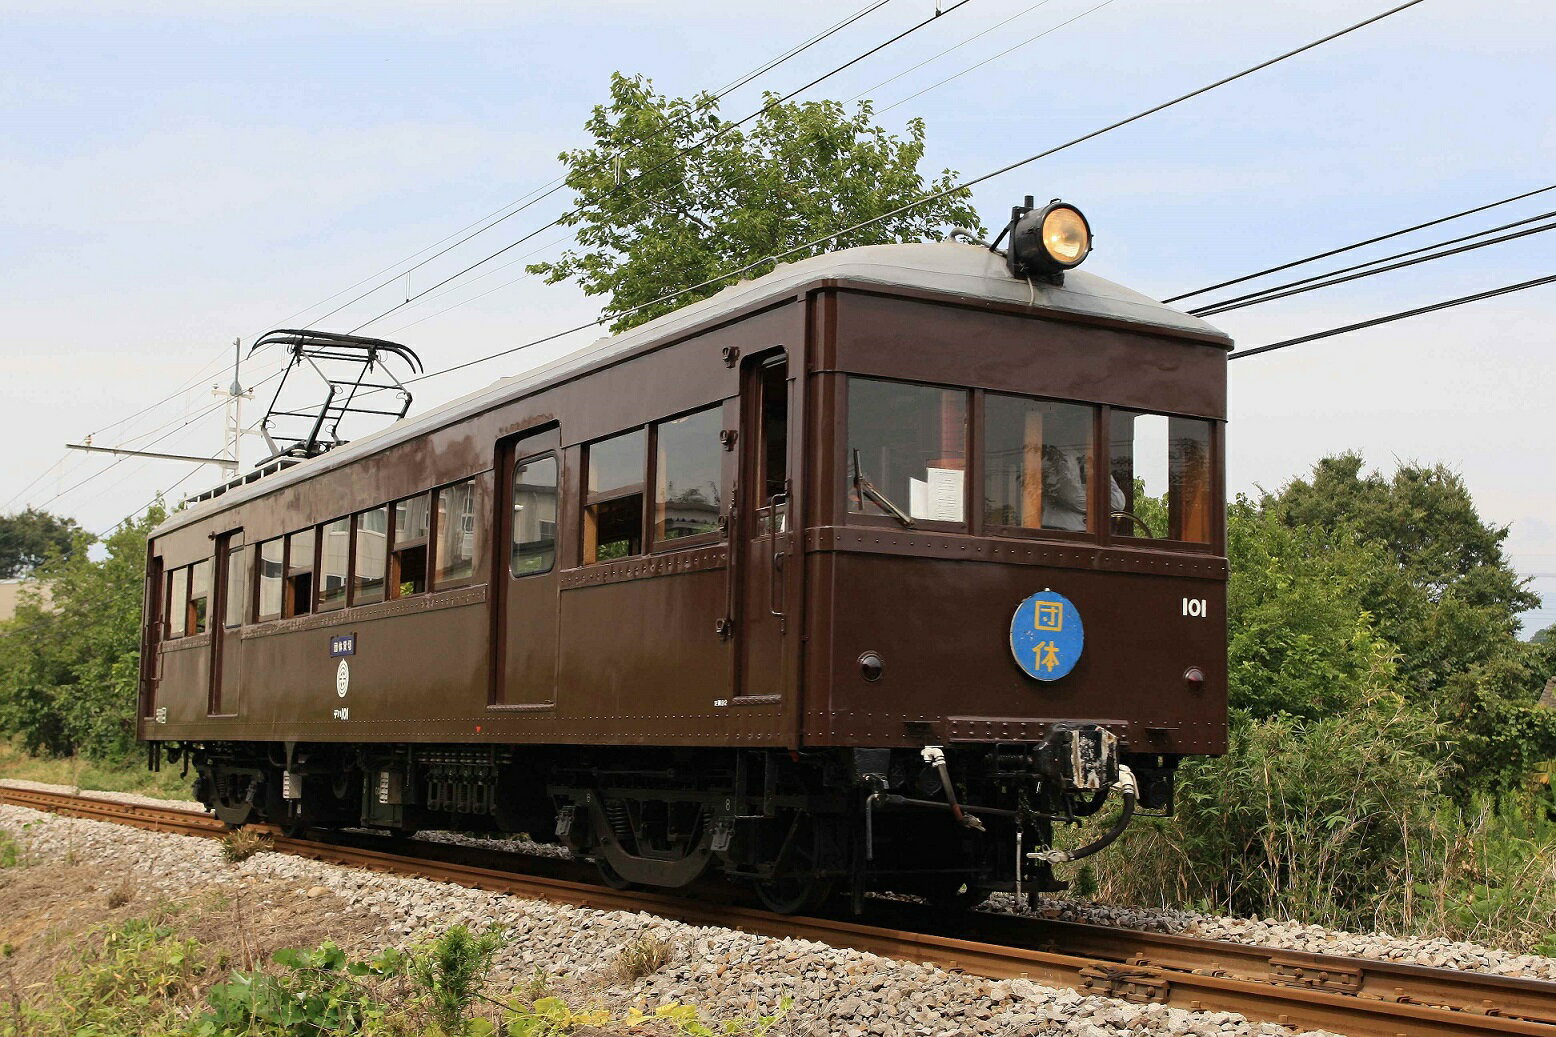 【ふるさと納税】N-05 上毛電鉄の特別な電車「デハ101」の貸切り